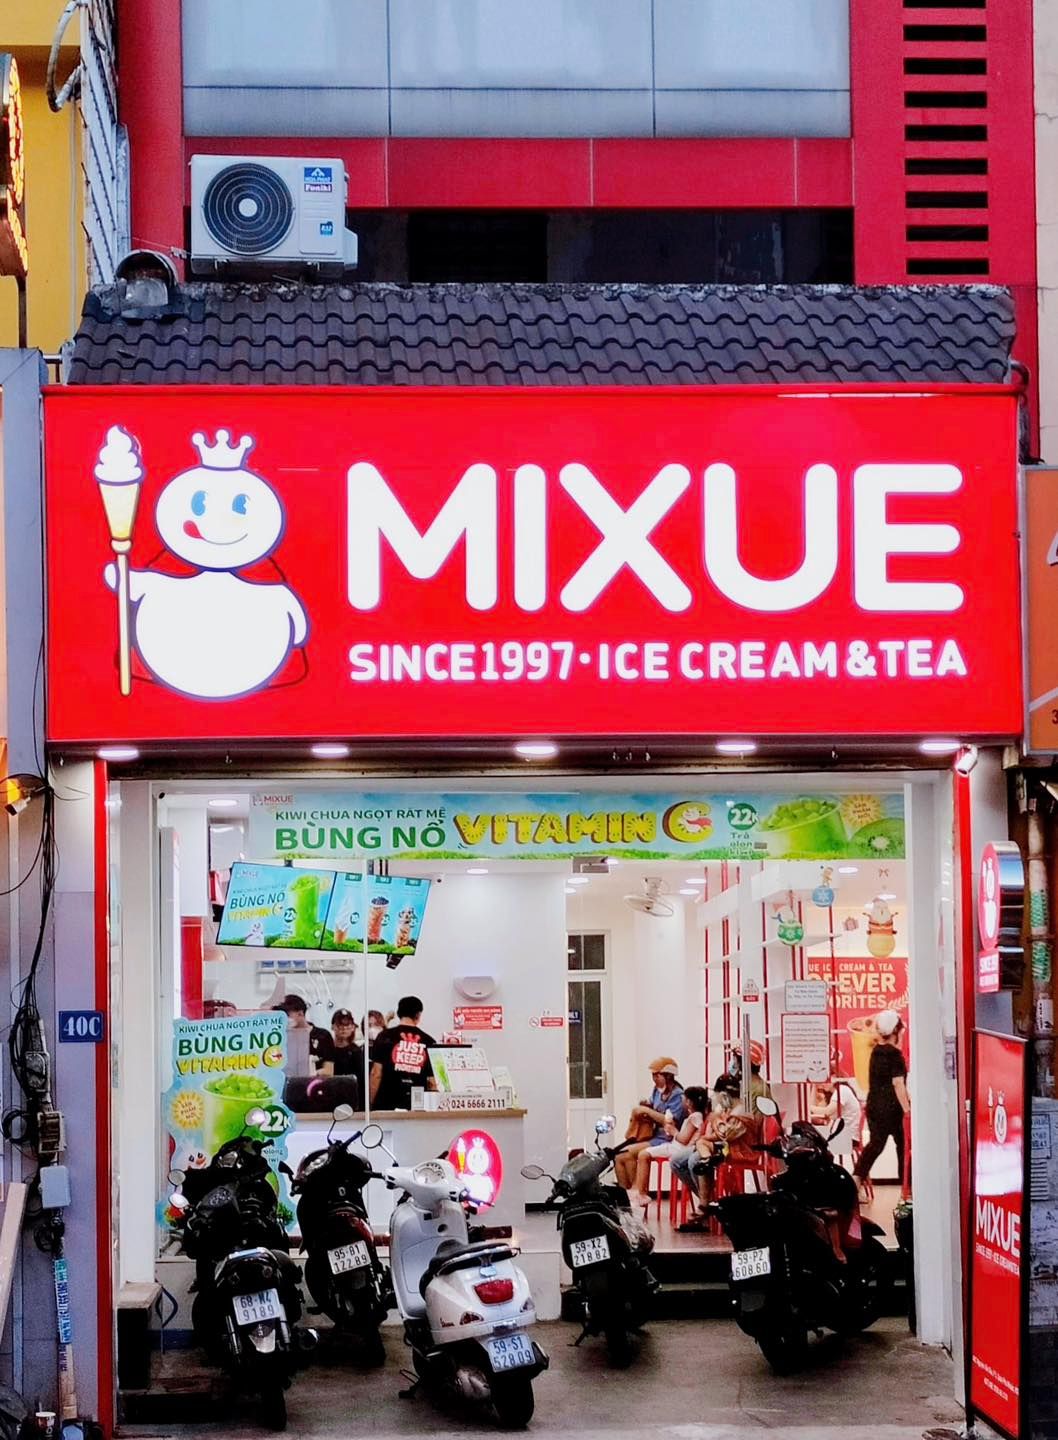 Chuỗi kem và trà sữa giá rẻ Mixue chạm mốc 1.000 cửa hàng tại Việt Nam: Bằng tổng Highland Coffee, Phúc Long, The Coffee House, Trung Nguyên Legend cộng lại - Ảnh 3.